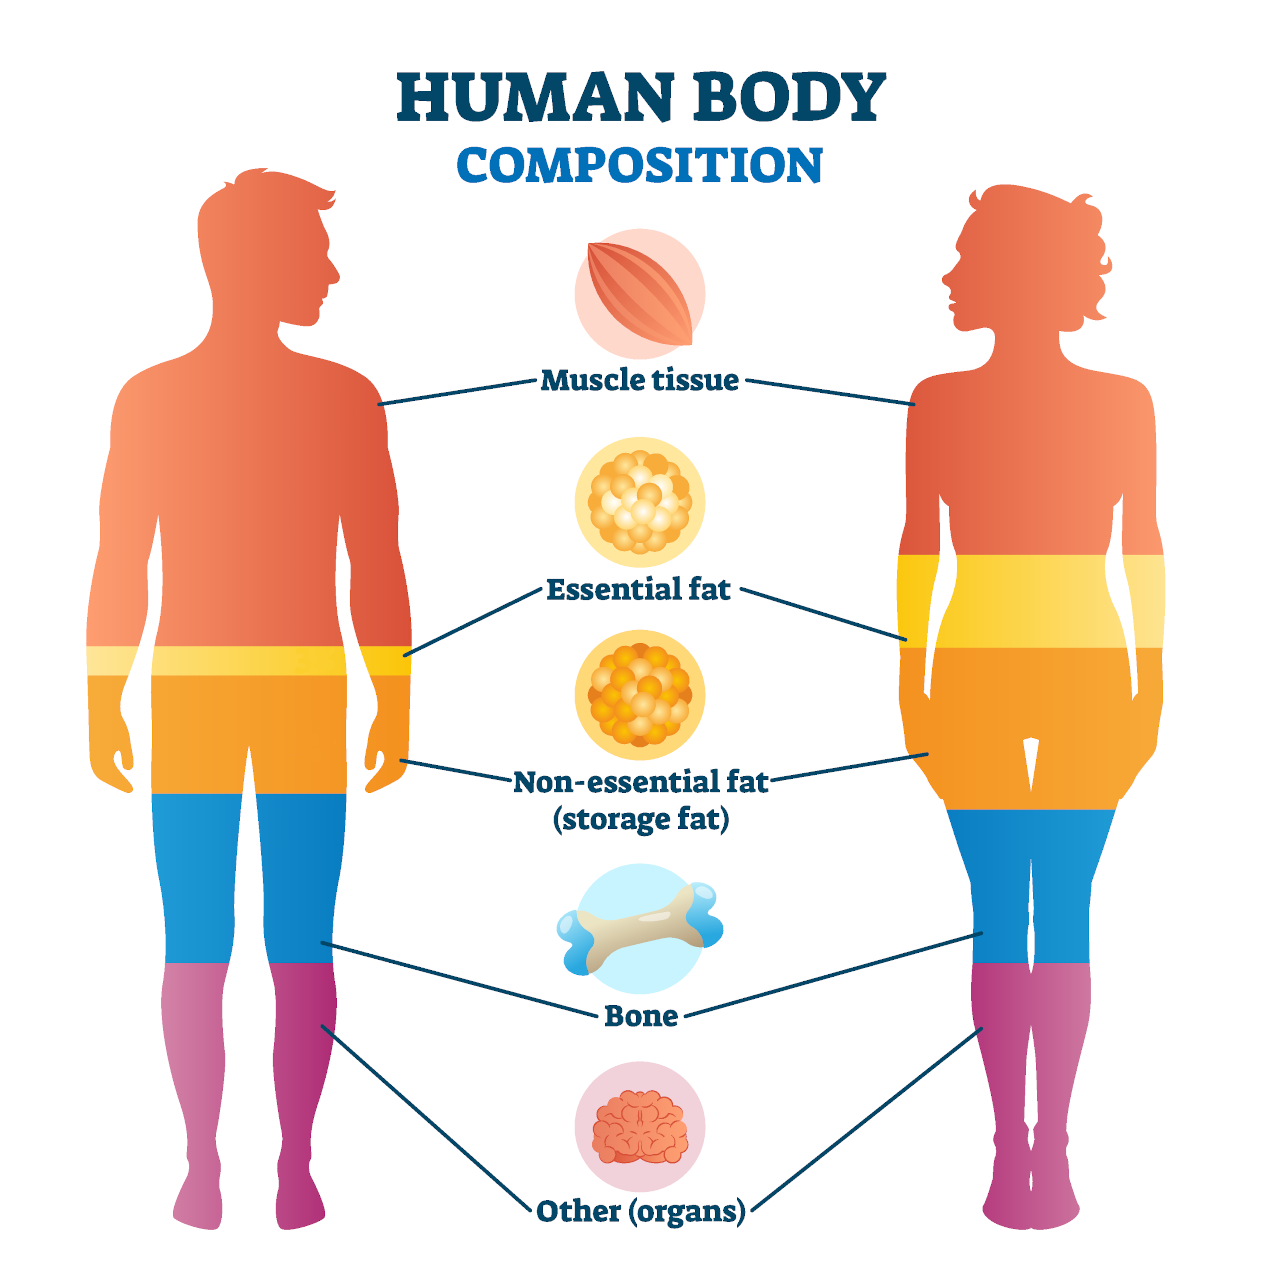 رسم بياني يوضح تكوين الجسم الصحي مع الدهون المثالية في الجسم والعضلات الخالية من الدهون والعظام والماء وكتلة الأعضاء